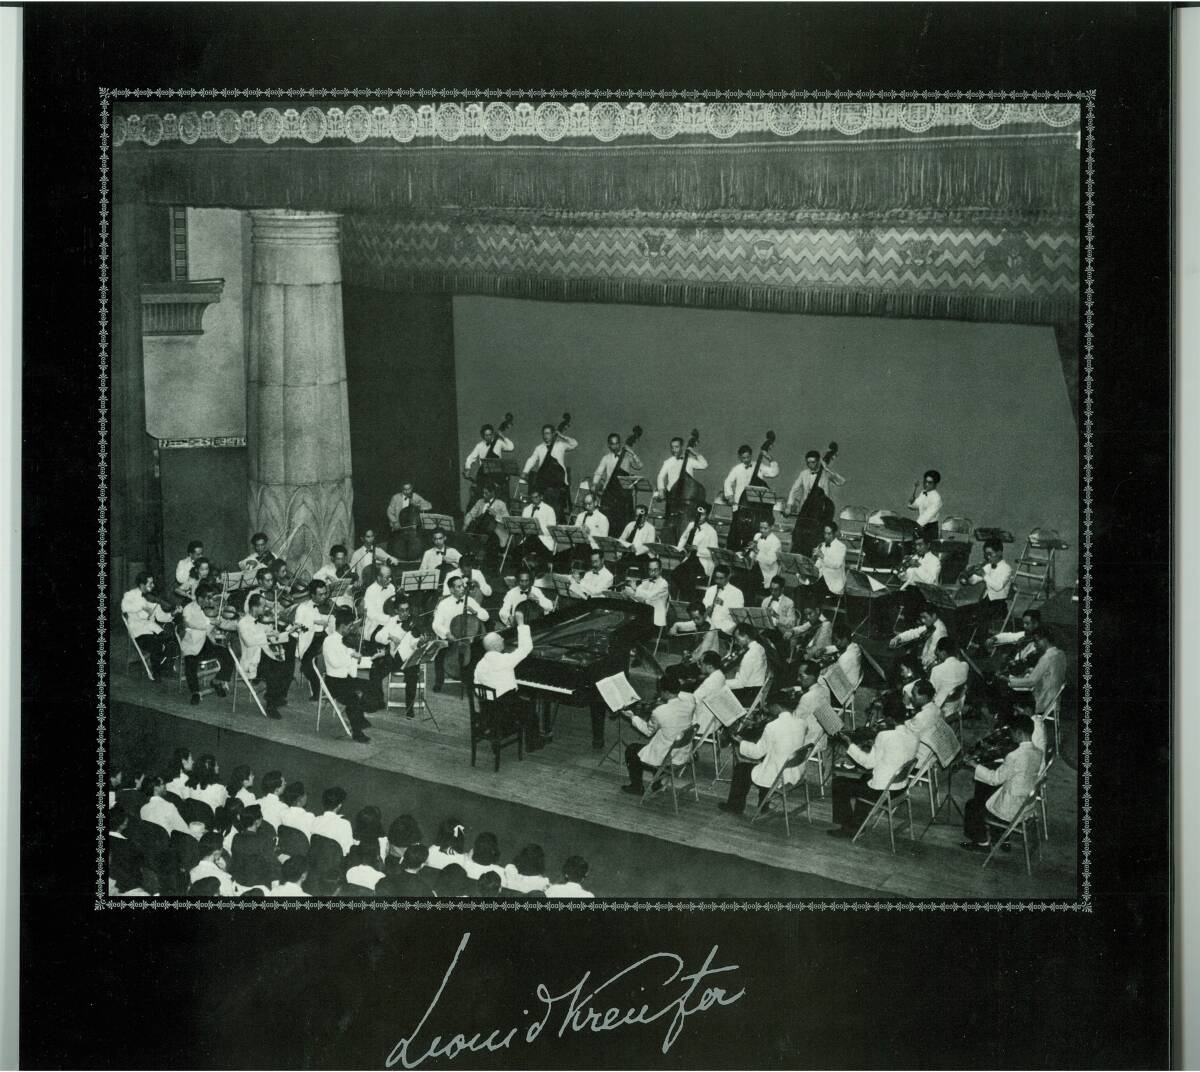  высшее редкий собственный . запись Leo need * Kreuzer. . производство no. 2 сборник черновой maninof: фортепьяно концерт no. 2 номер (1952 год Live )ATRAS-8310